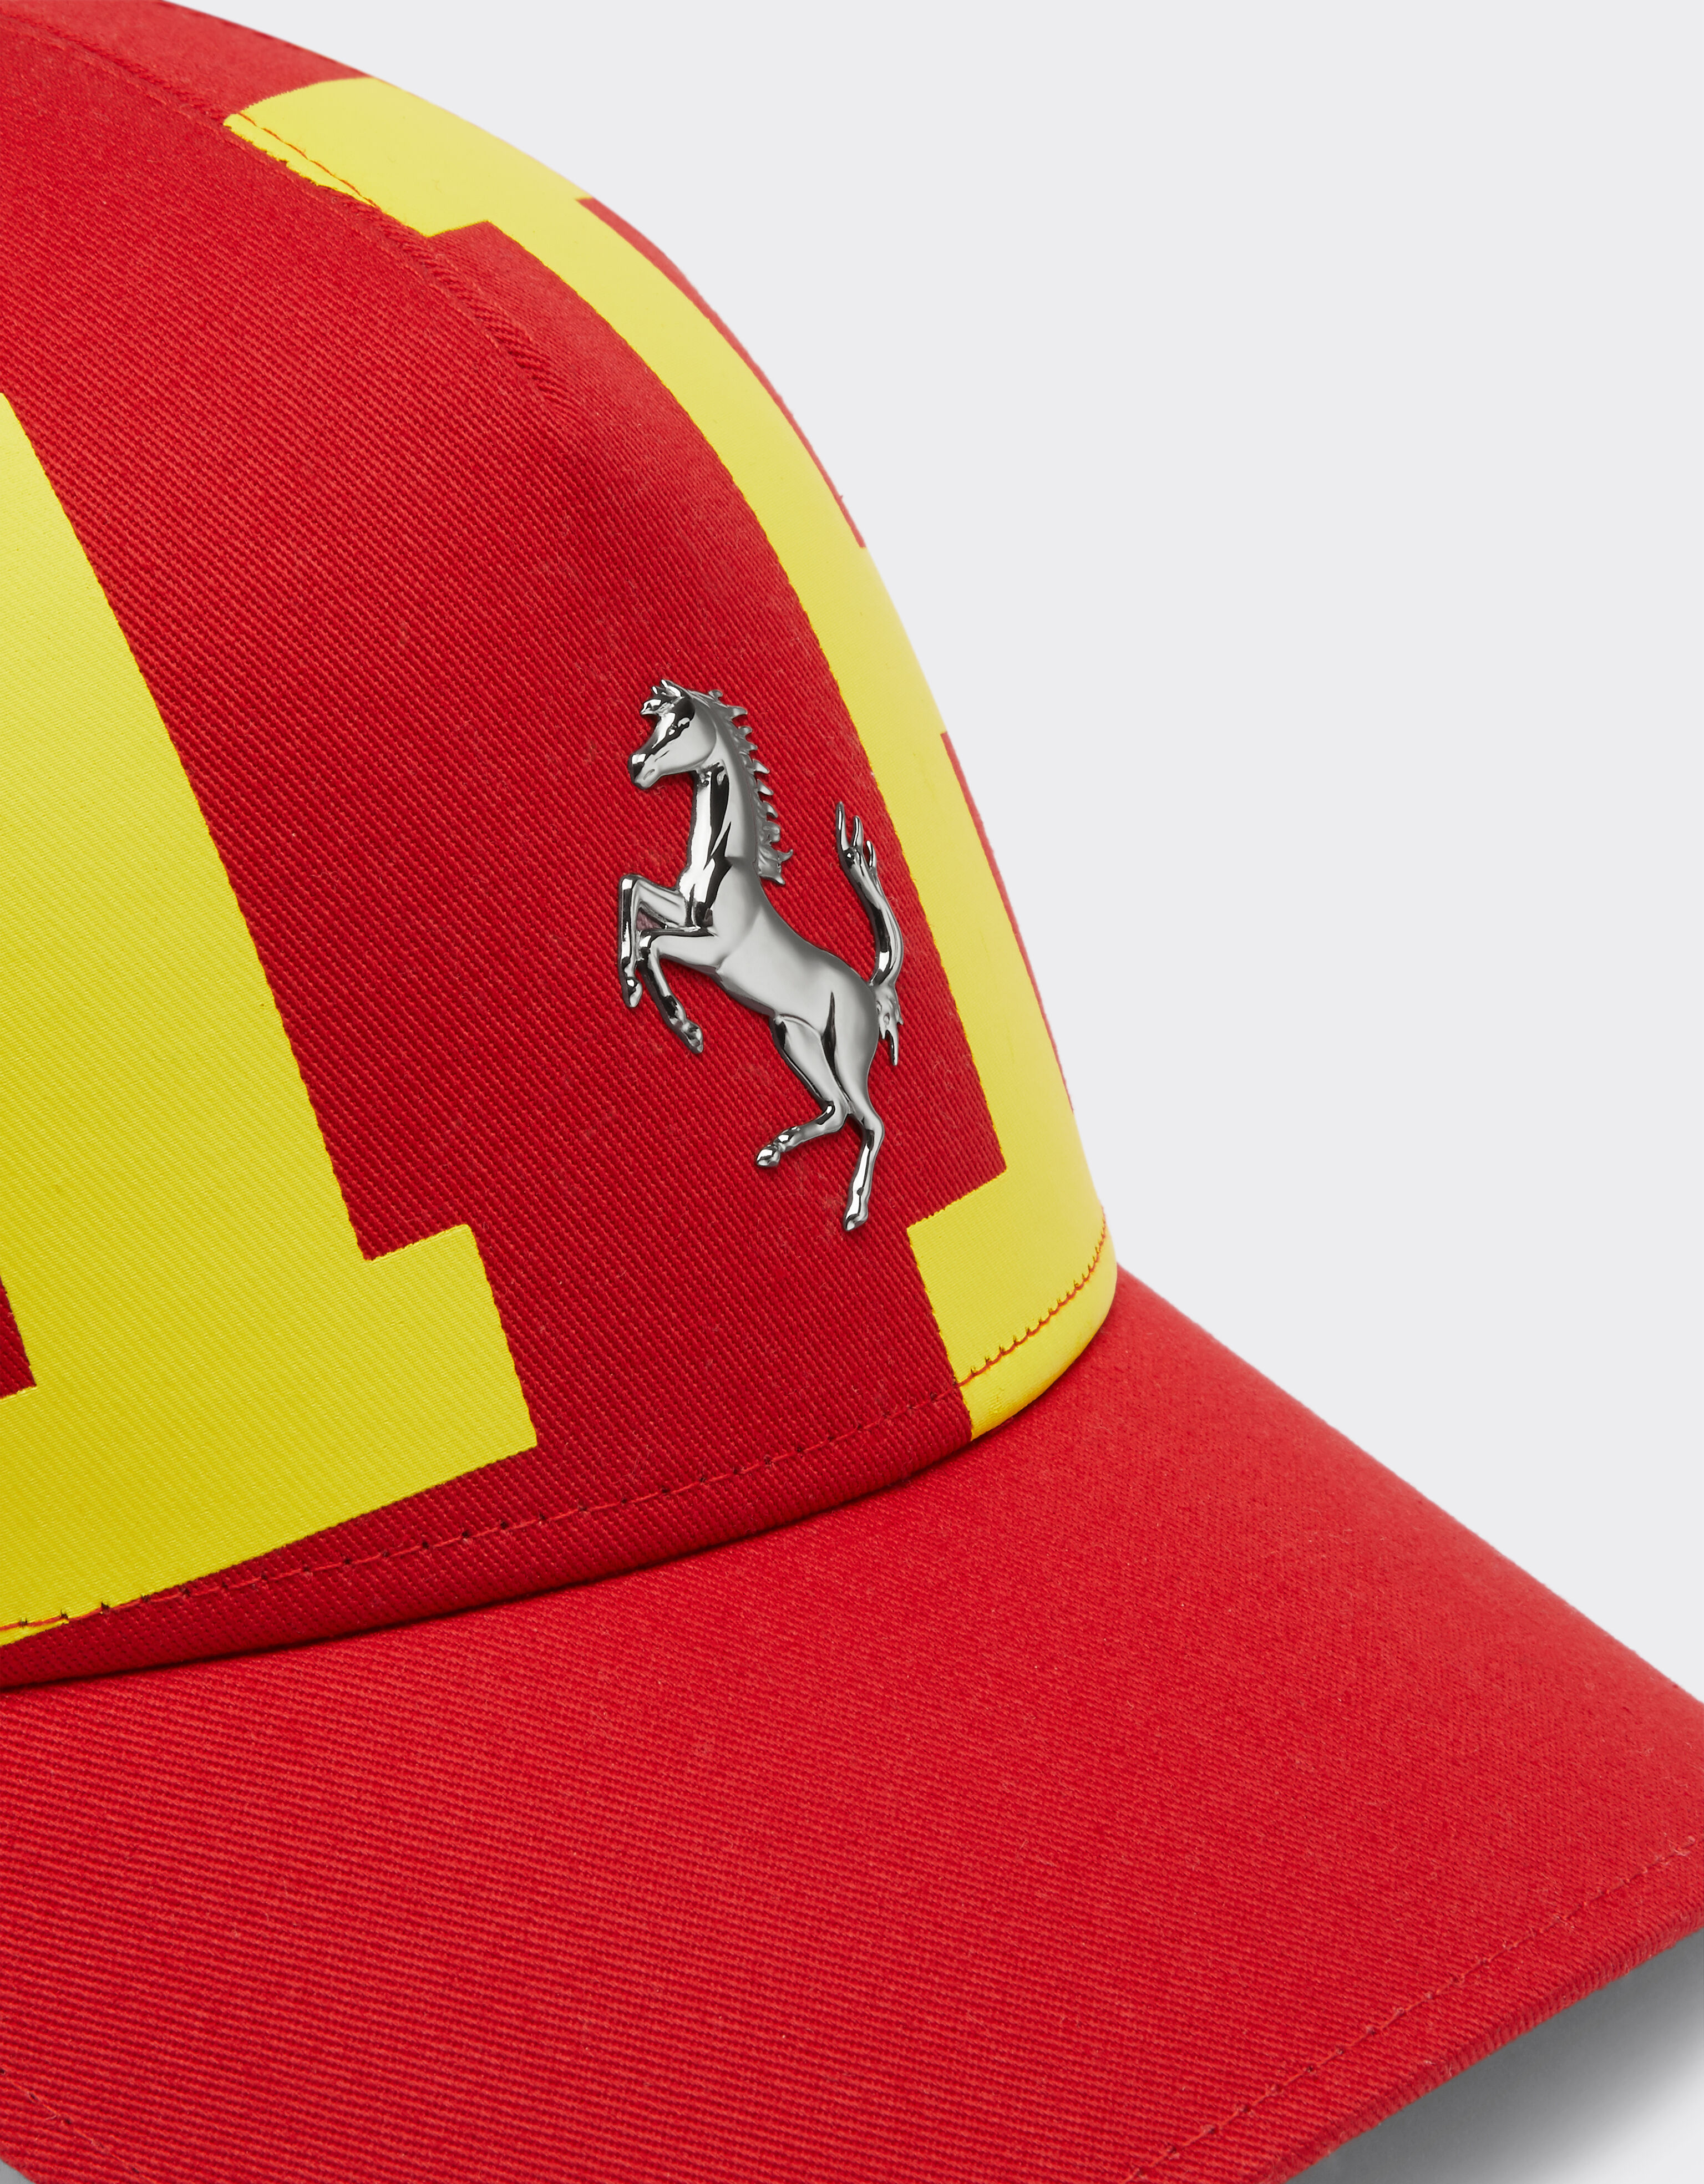 Ferrari Cotton twill cap with Ferrari logo Rosso Corsa 47084f